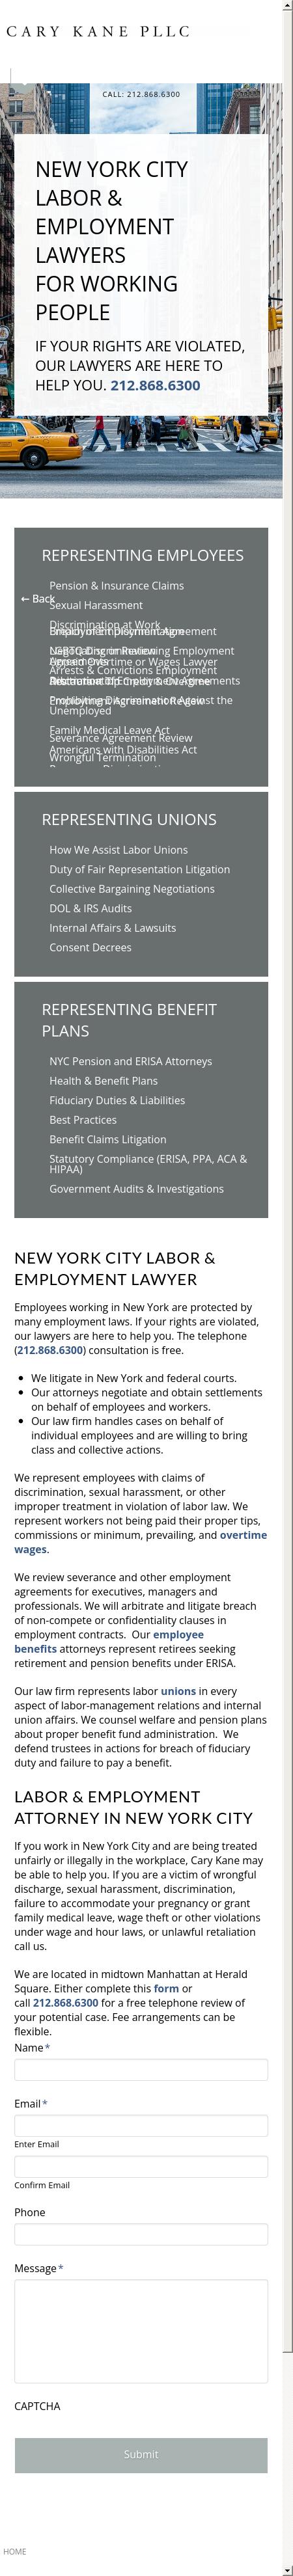 Cary Kane LLP - New York NY Lawyers